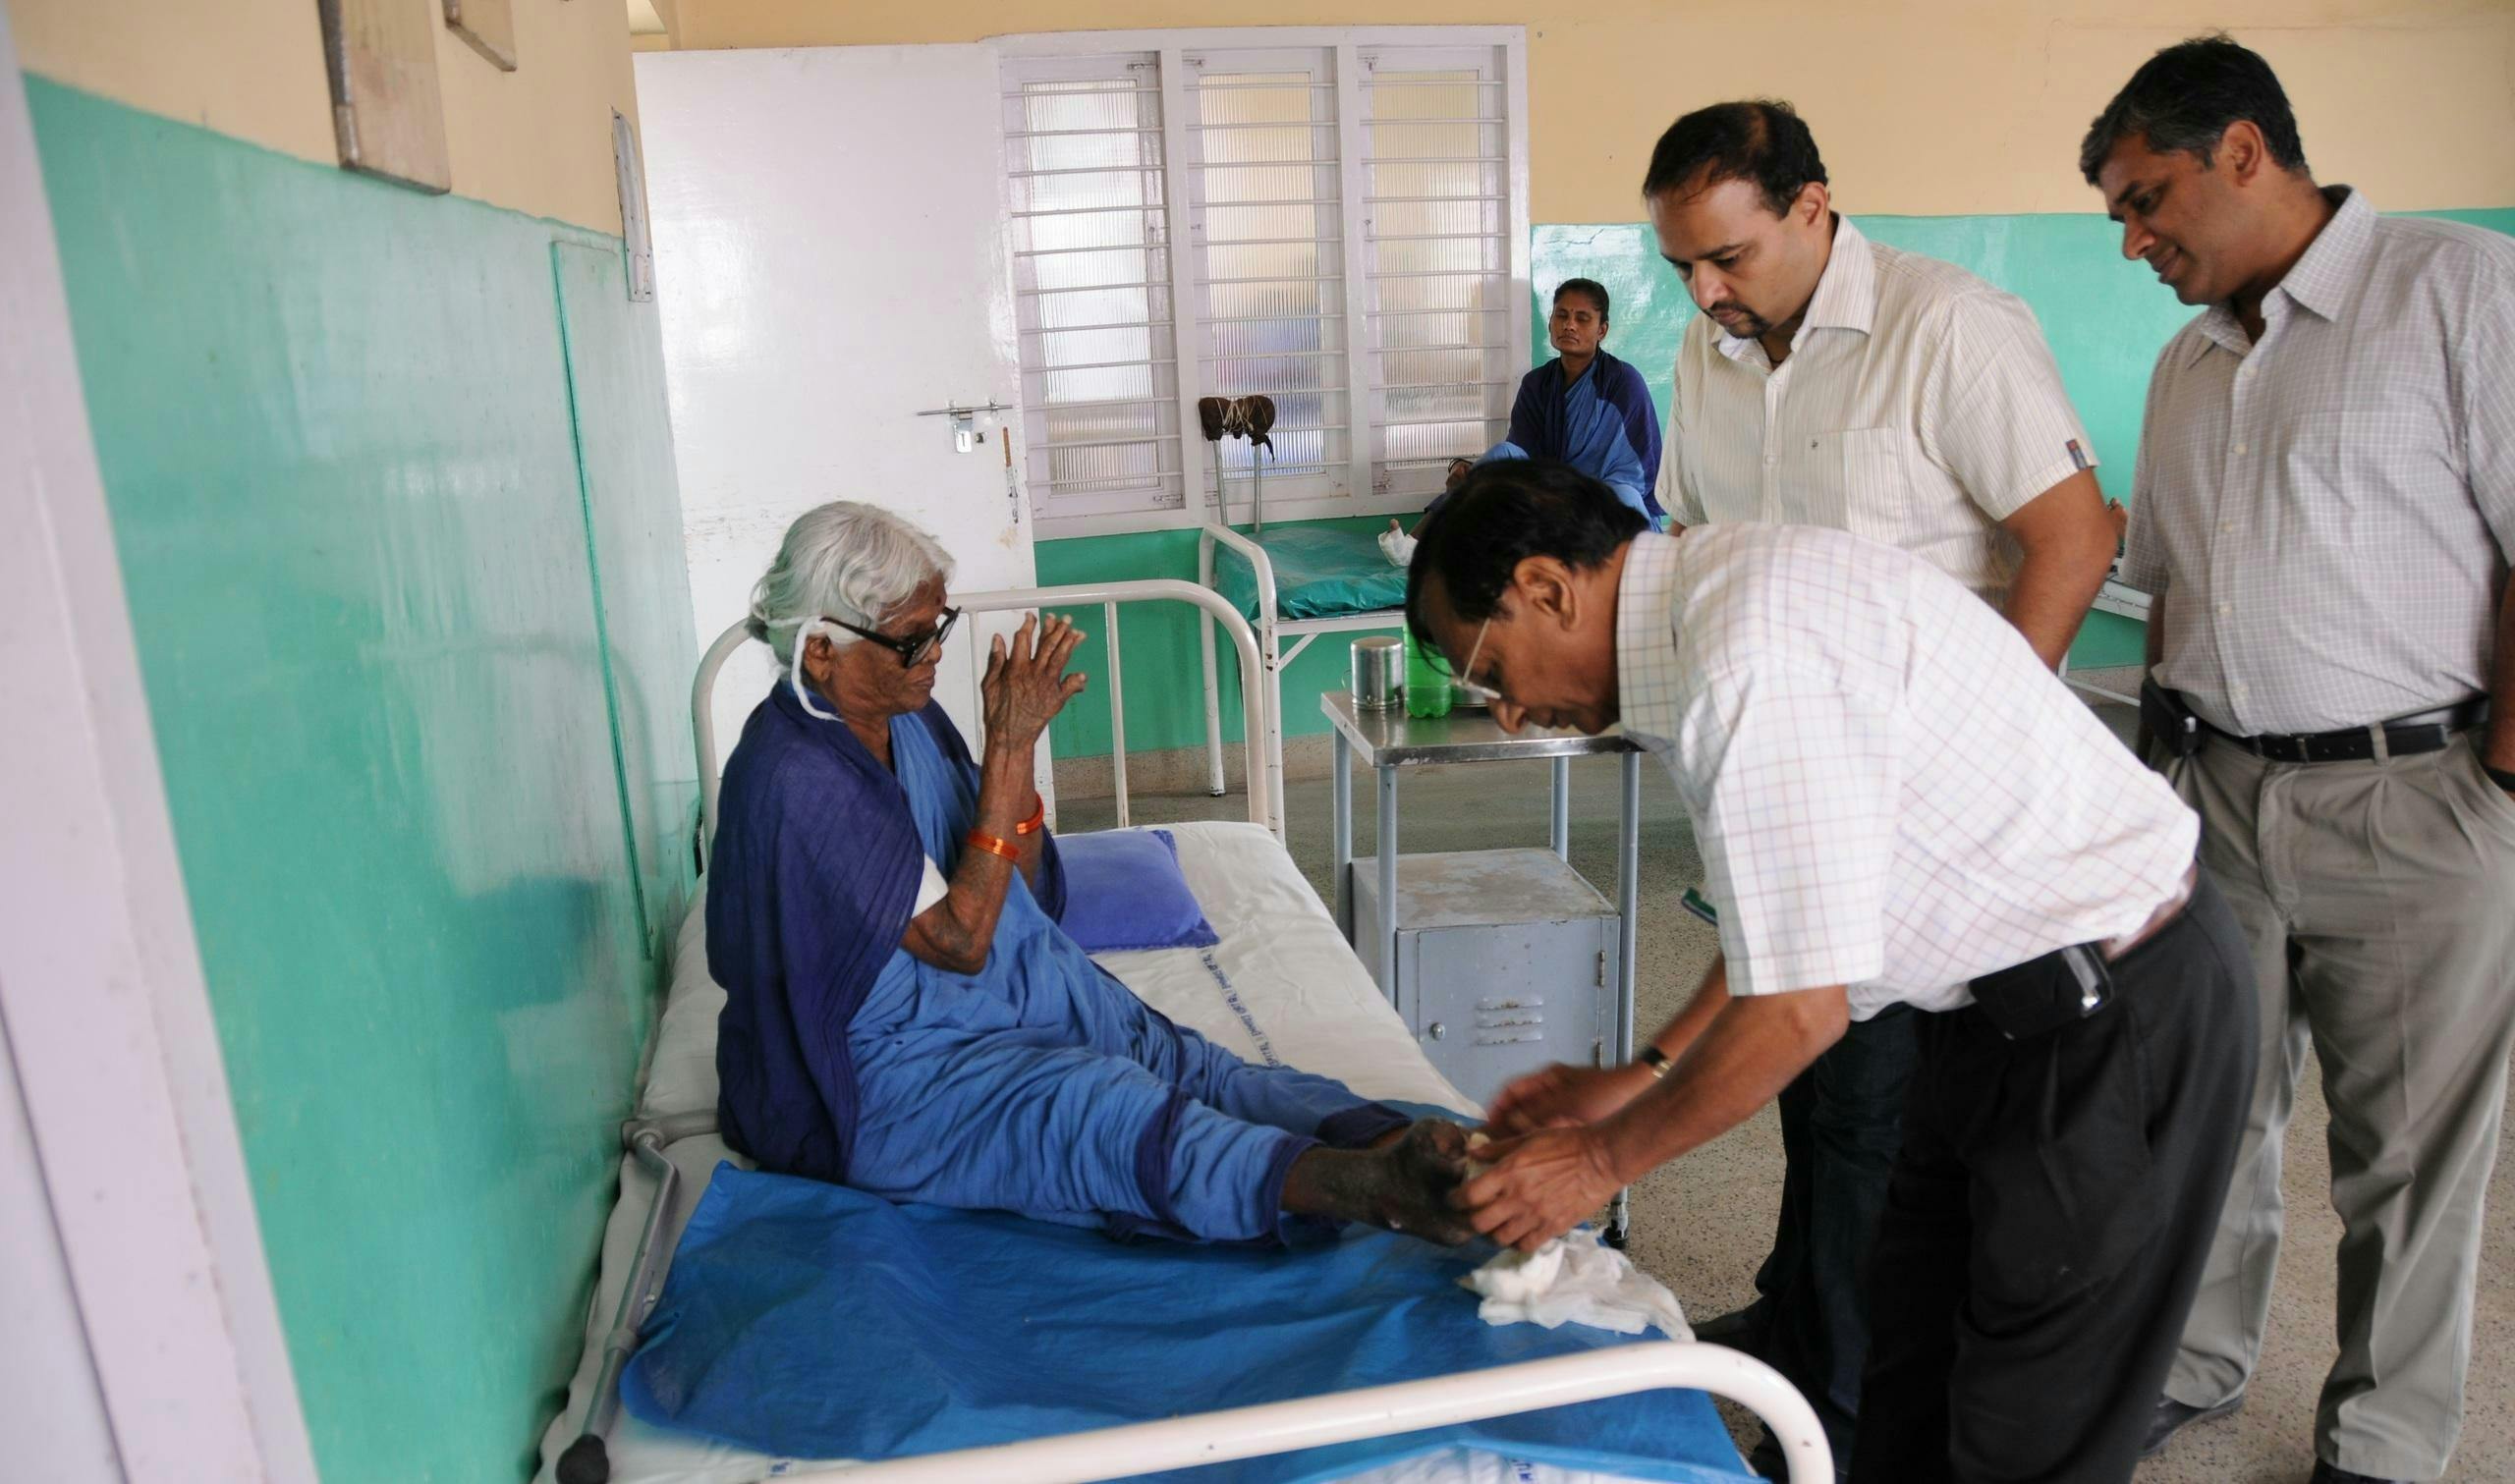 Une femme âgée est assise sur un lit d'hôpital dans un hôpital indien et joint ses mains. Un médecin examine son pied à la recherche de signes de lèpre. Deux hommes se tiennent derrière et observent.